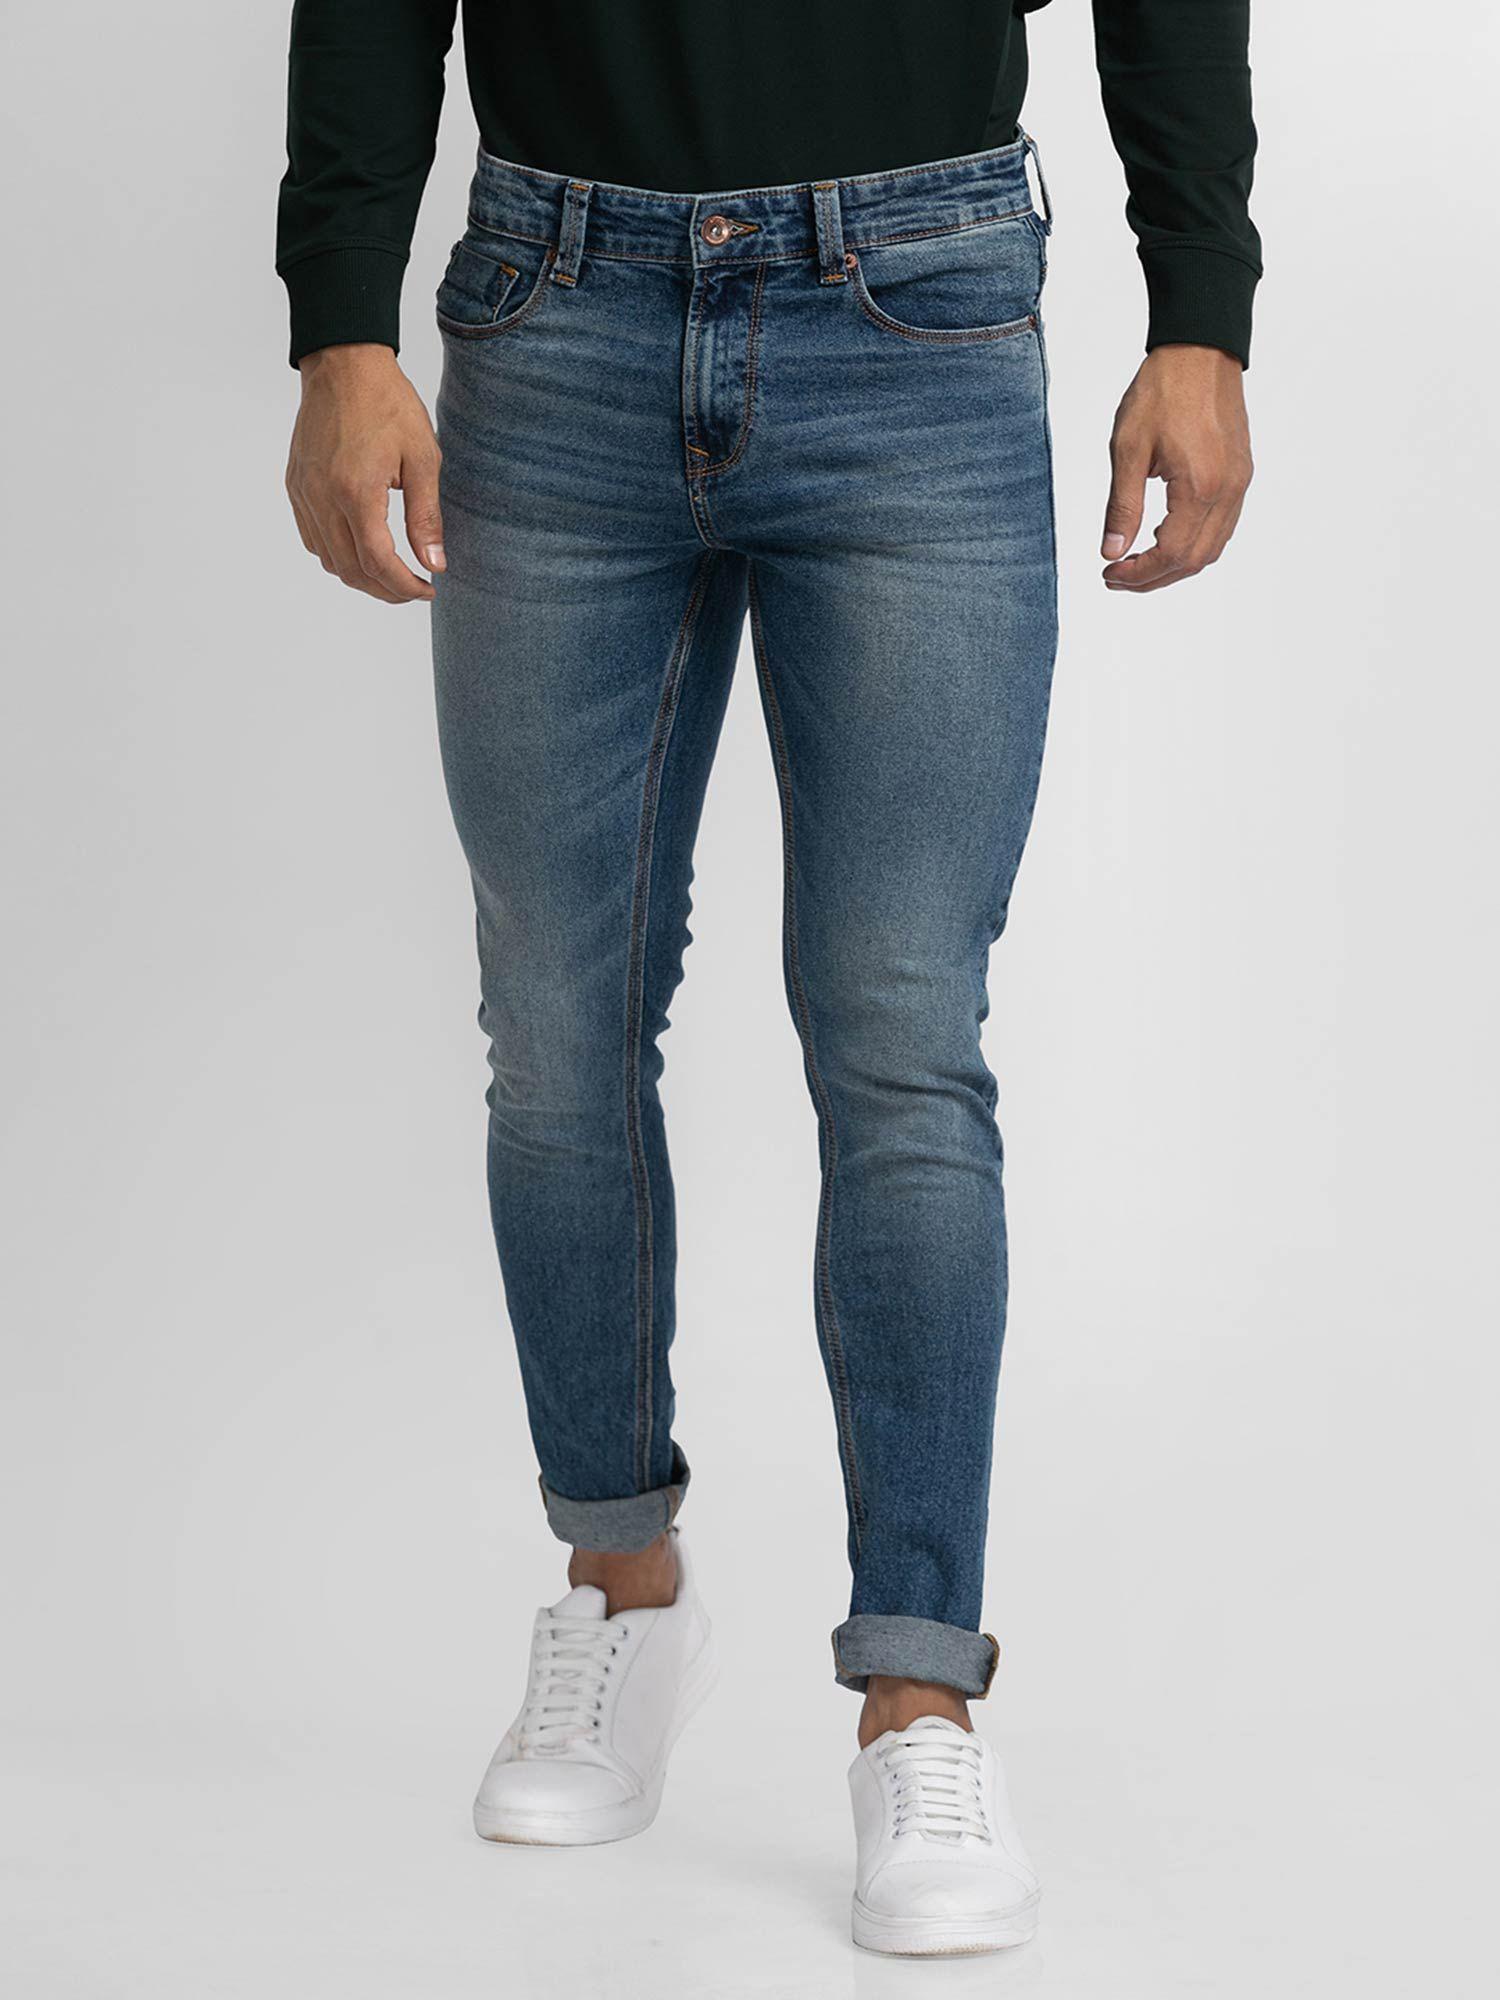 Vintage Blue Cotton Super Slim Fit Tapered Length Jeans for Men (super Skinny)